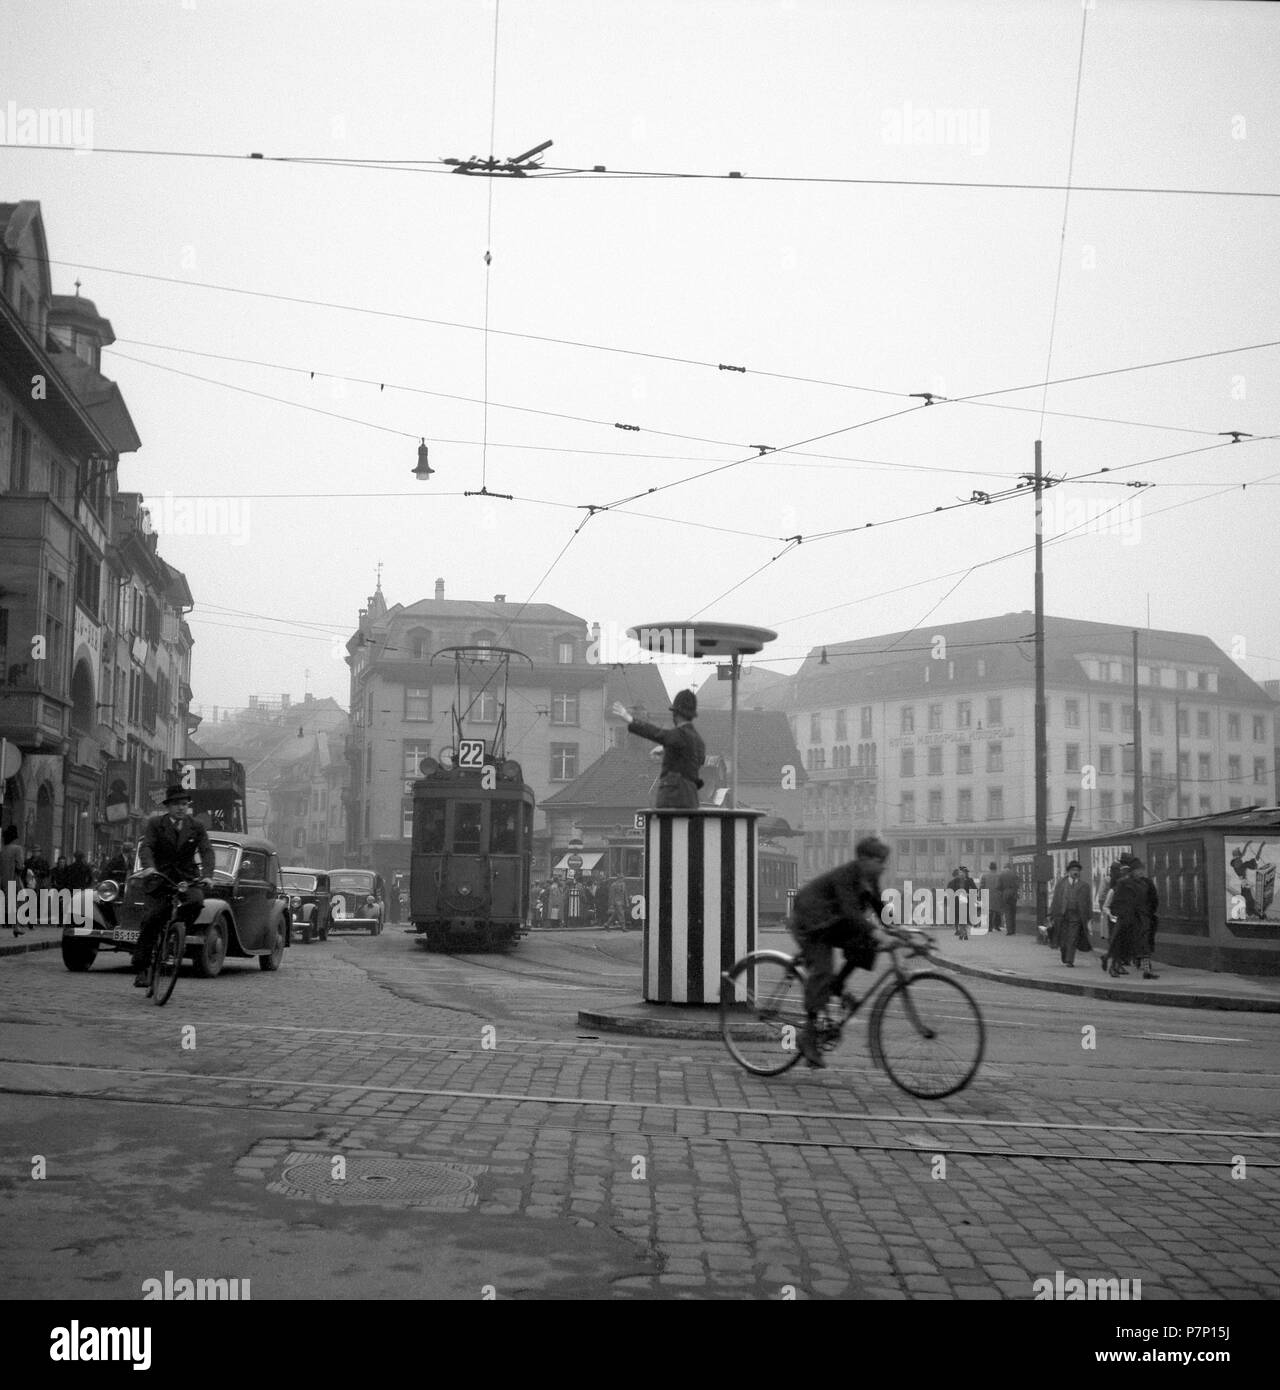 Attraversamento di strada, piazza nel centro della città, a circa 1950, Freiburg, Germania Foto Stock